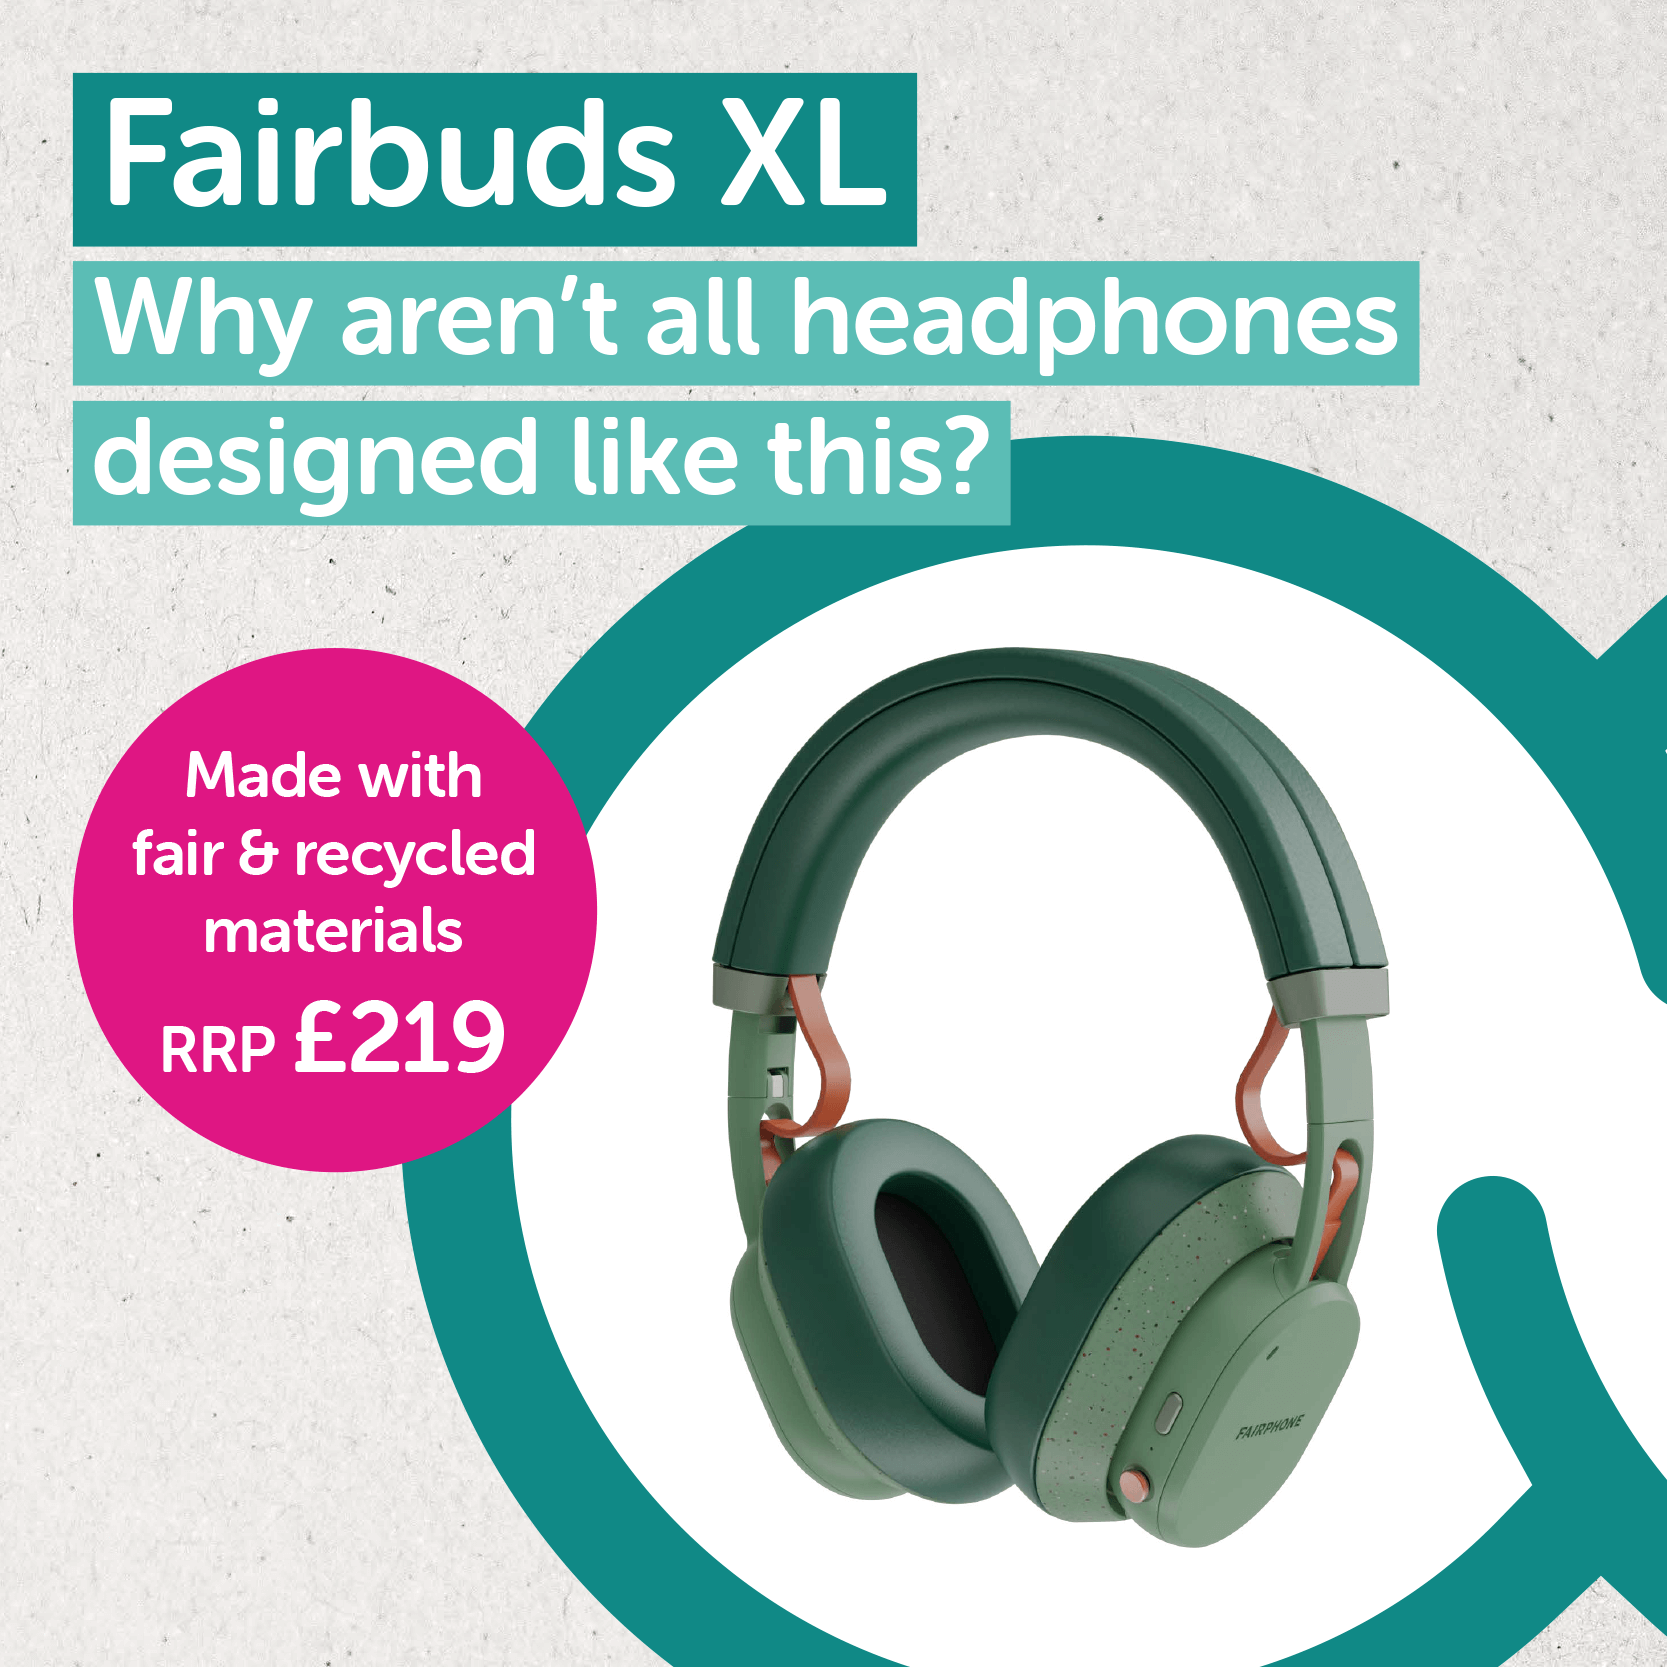 Green Fairbuds XL headphones